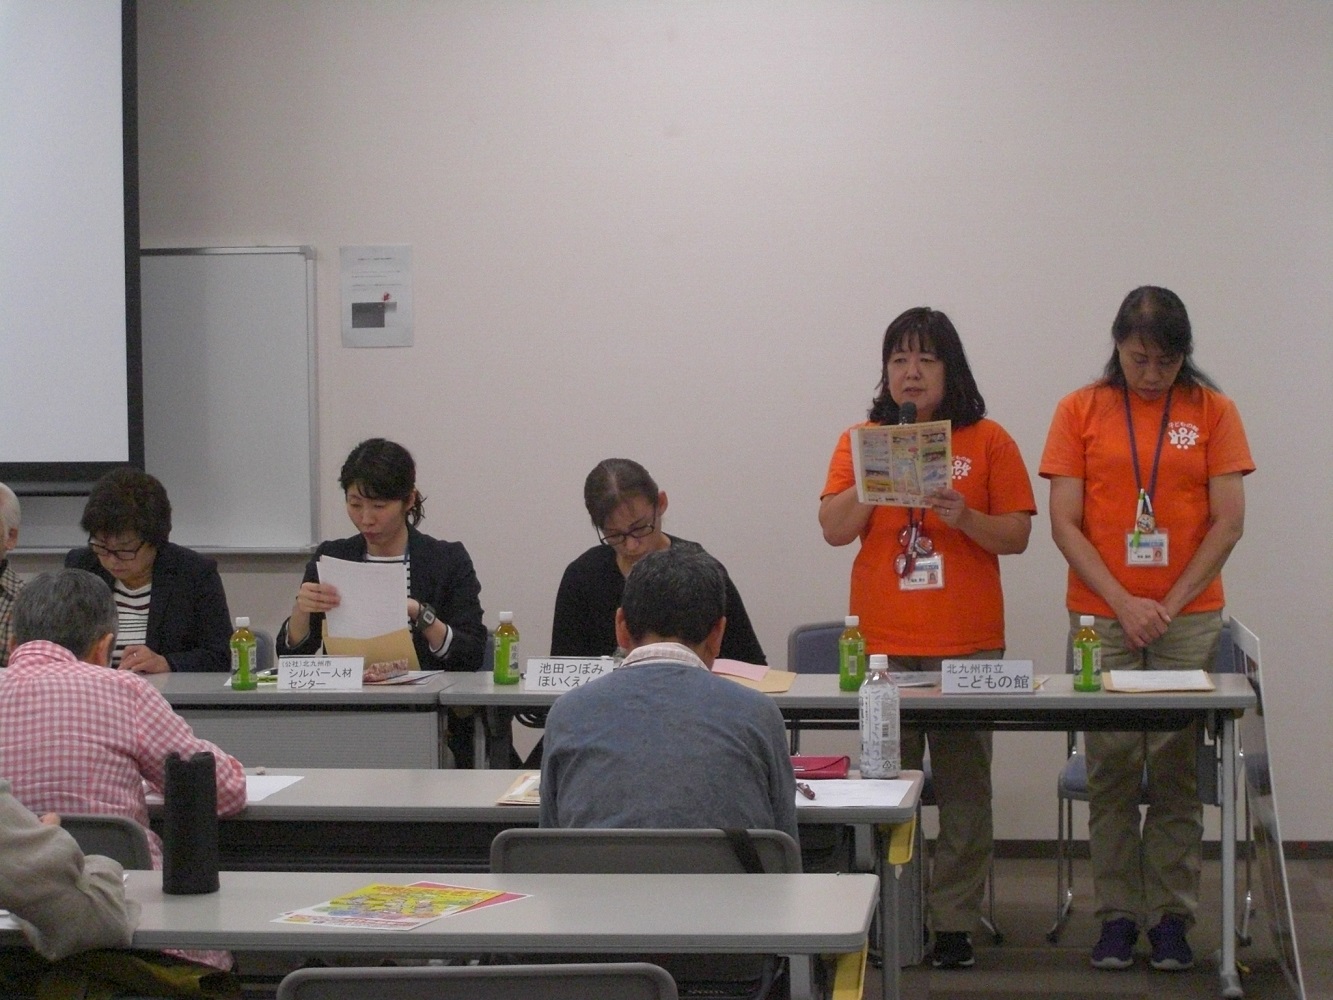 令和元年度第3回フォローアップ研修会「活動先探索講座～自分に合った活動を見つけよう～in北九州」を開催しました